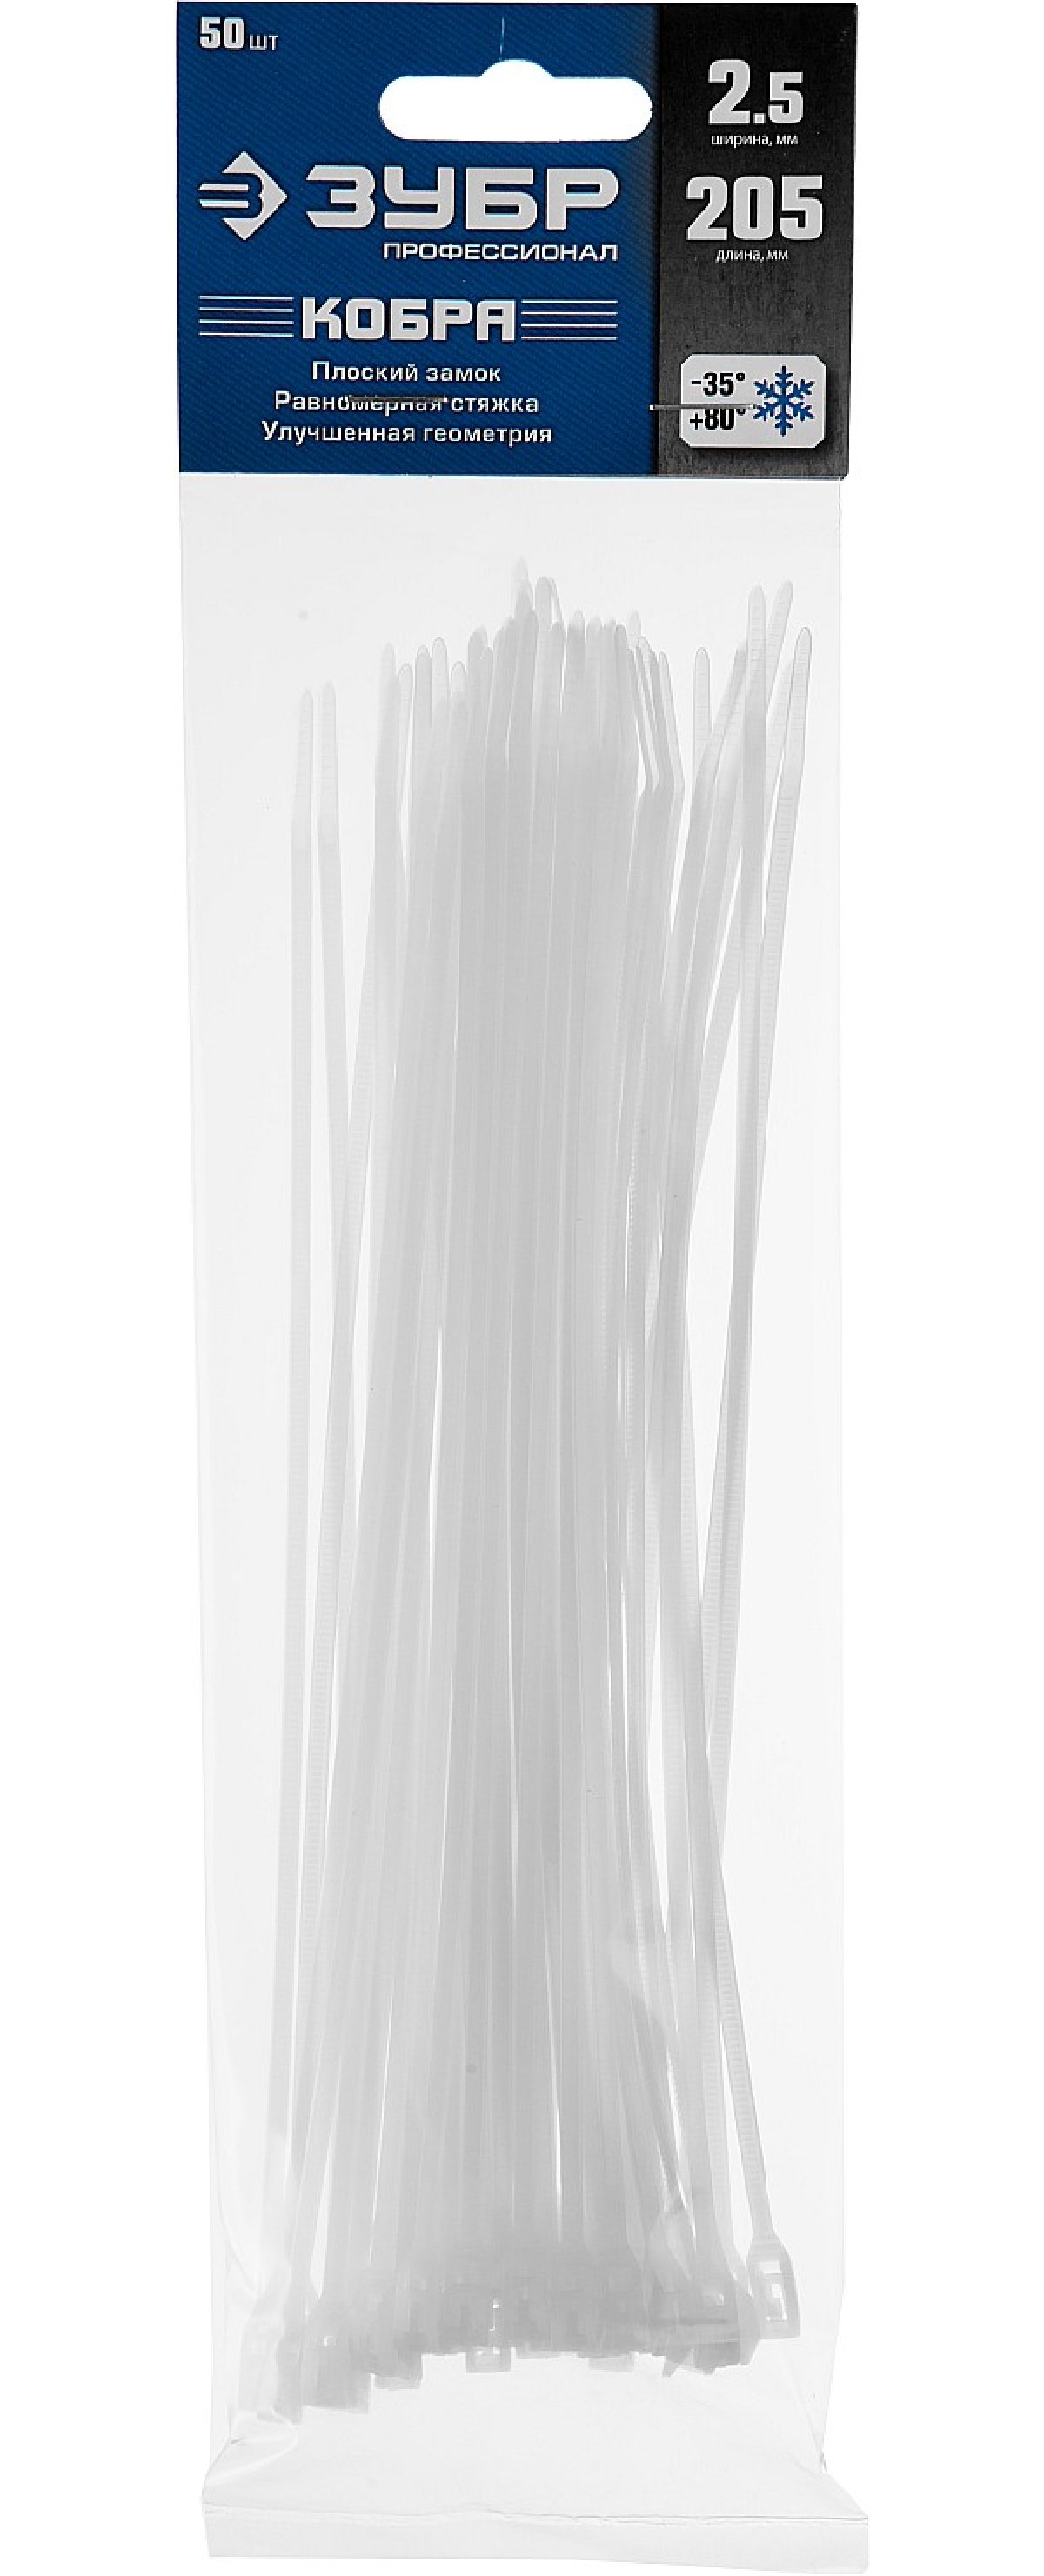 Кабельные стяжки с плоским замком ЗУБР КОБРА Профессионал нейлоновые (РА66) белые 2.5 х 205 мм 50 шт. (30930-25-205)